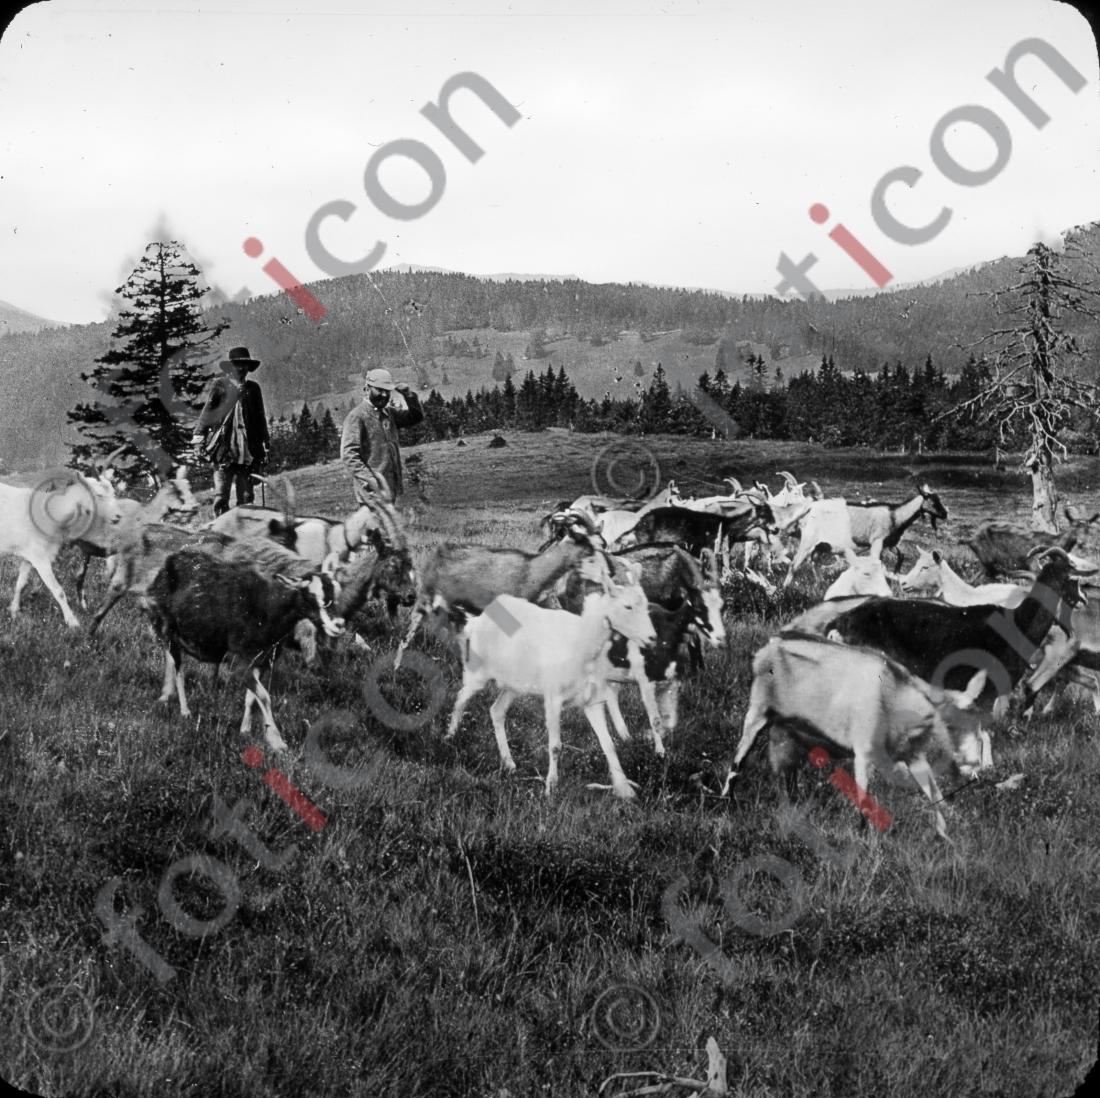 Ziegen im Schwarzwald | Goats in the Black Forest (foticon-simon-127-017-sw.jpg)